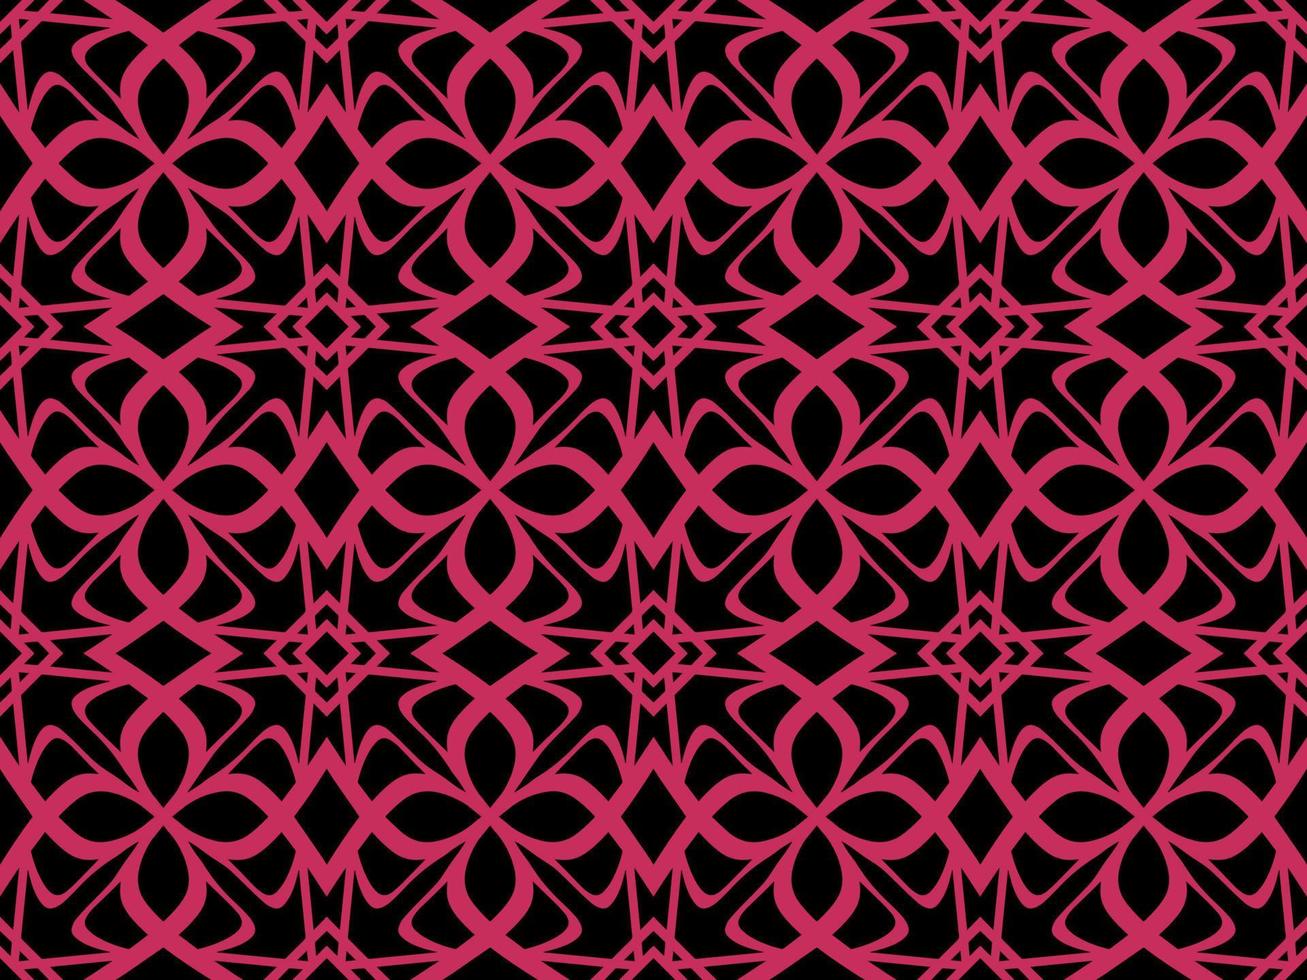 rosa geometrisk sömlös mönster med stam- form. mönster designad i ikat, aztek, marockanska, thai, lyx arabicum stil. idealisk för tyg plagg, keramik, tapet. vektor illustration.